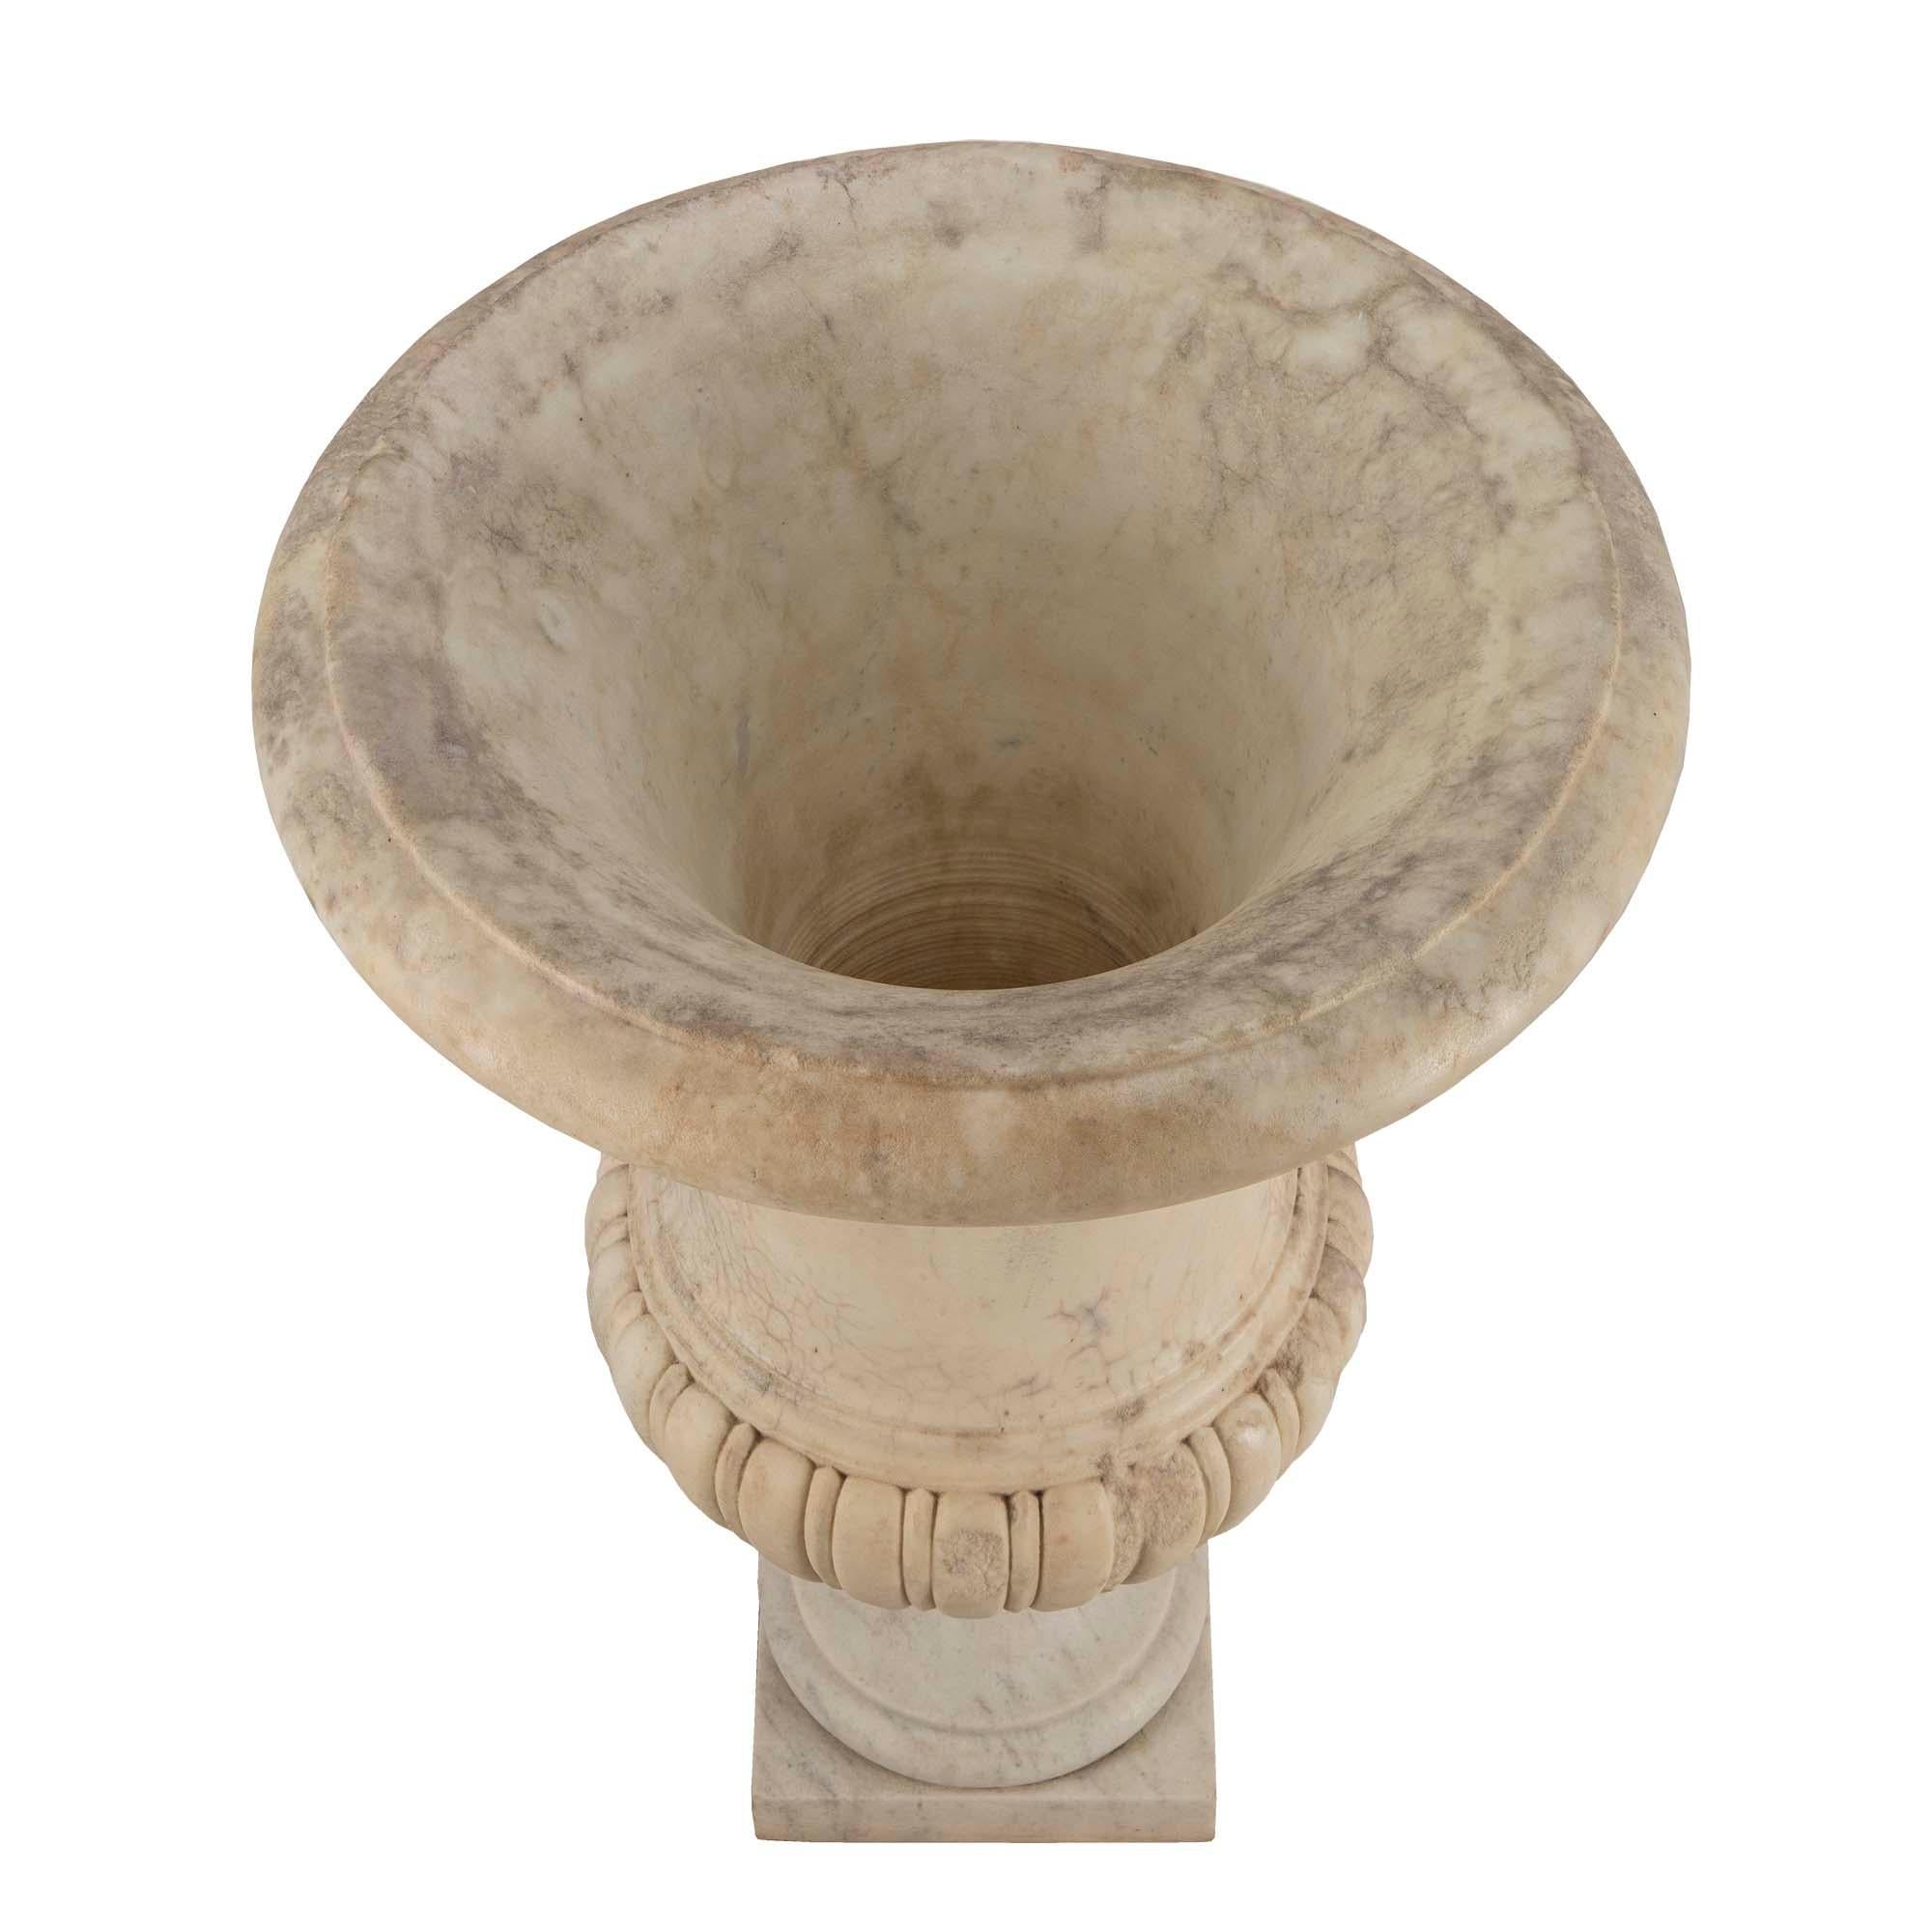 Eine äußerst dekorative italienische Urne aus weißem Carrara-Marmor aus der Zeit Ludwigs XVI. Die schöne Urne steht auf einem quadratischen Sockel unter dem geformten Sockel. Der Korpus weist ein fein gemeißeltes Rillenmuster auf, das sich bis zum